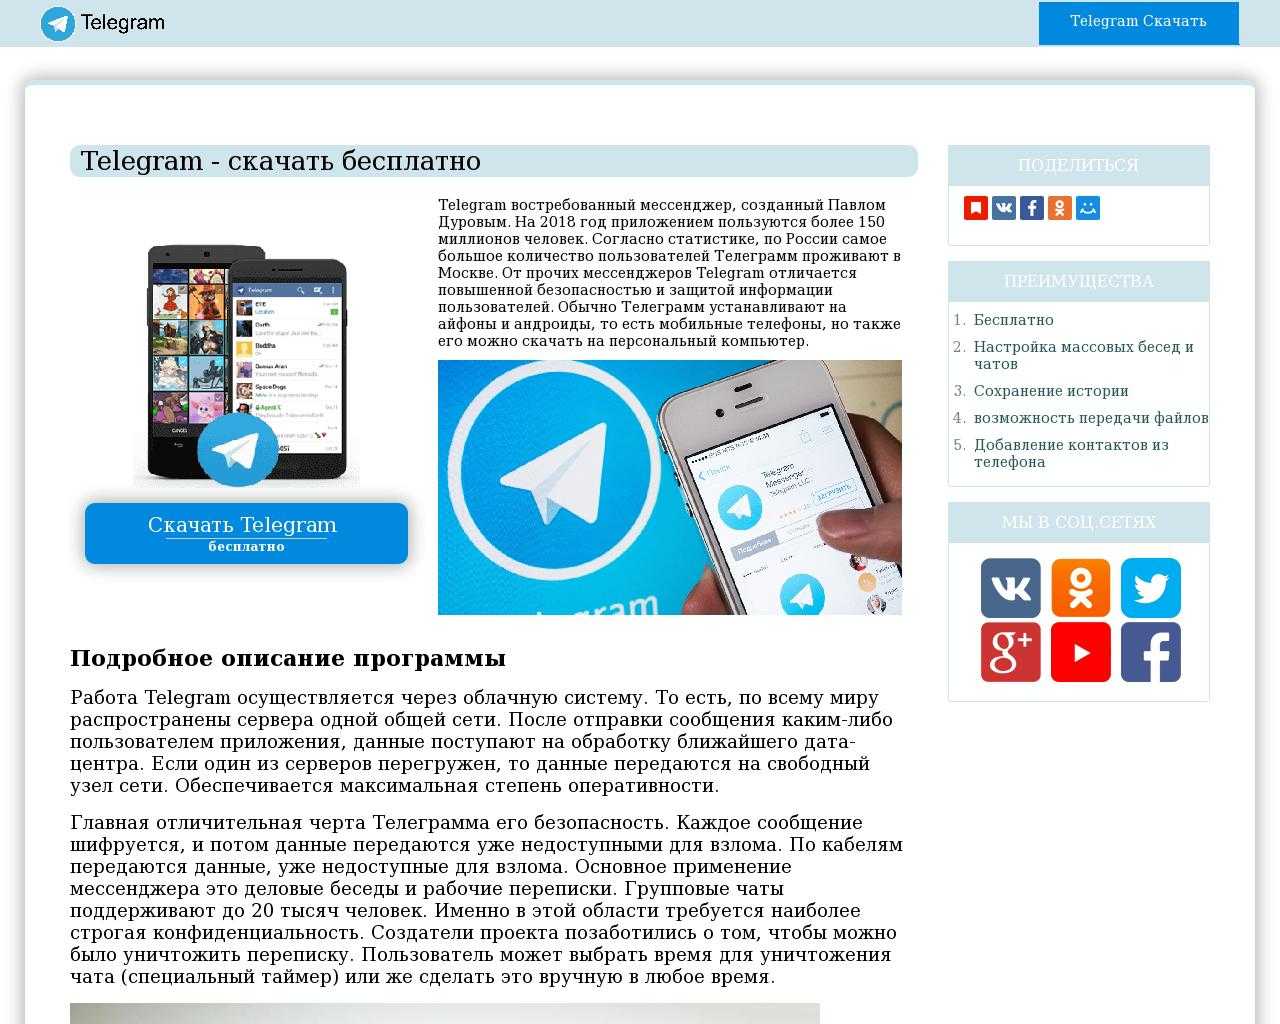 Телеграмм скачать бесплатно на русском на андроид и установить полную версию сайта фото 114